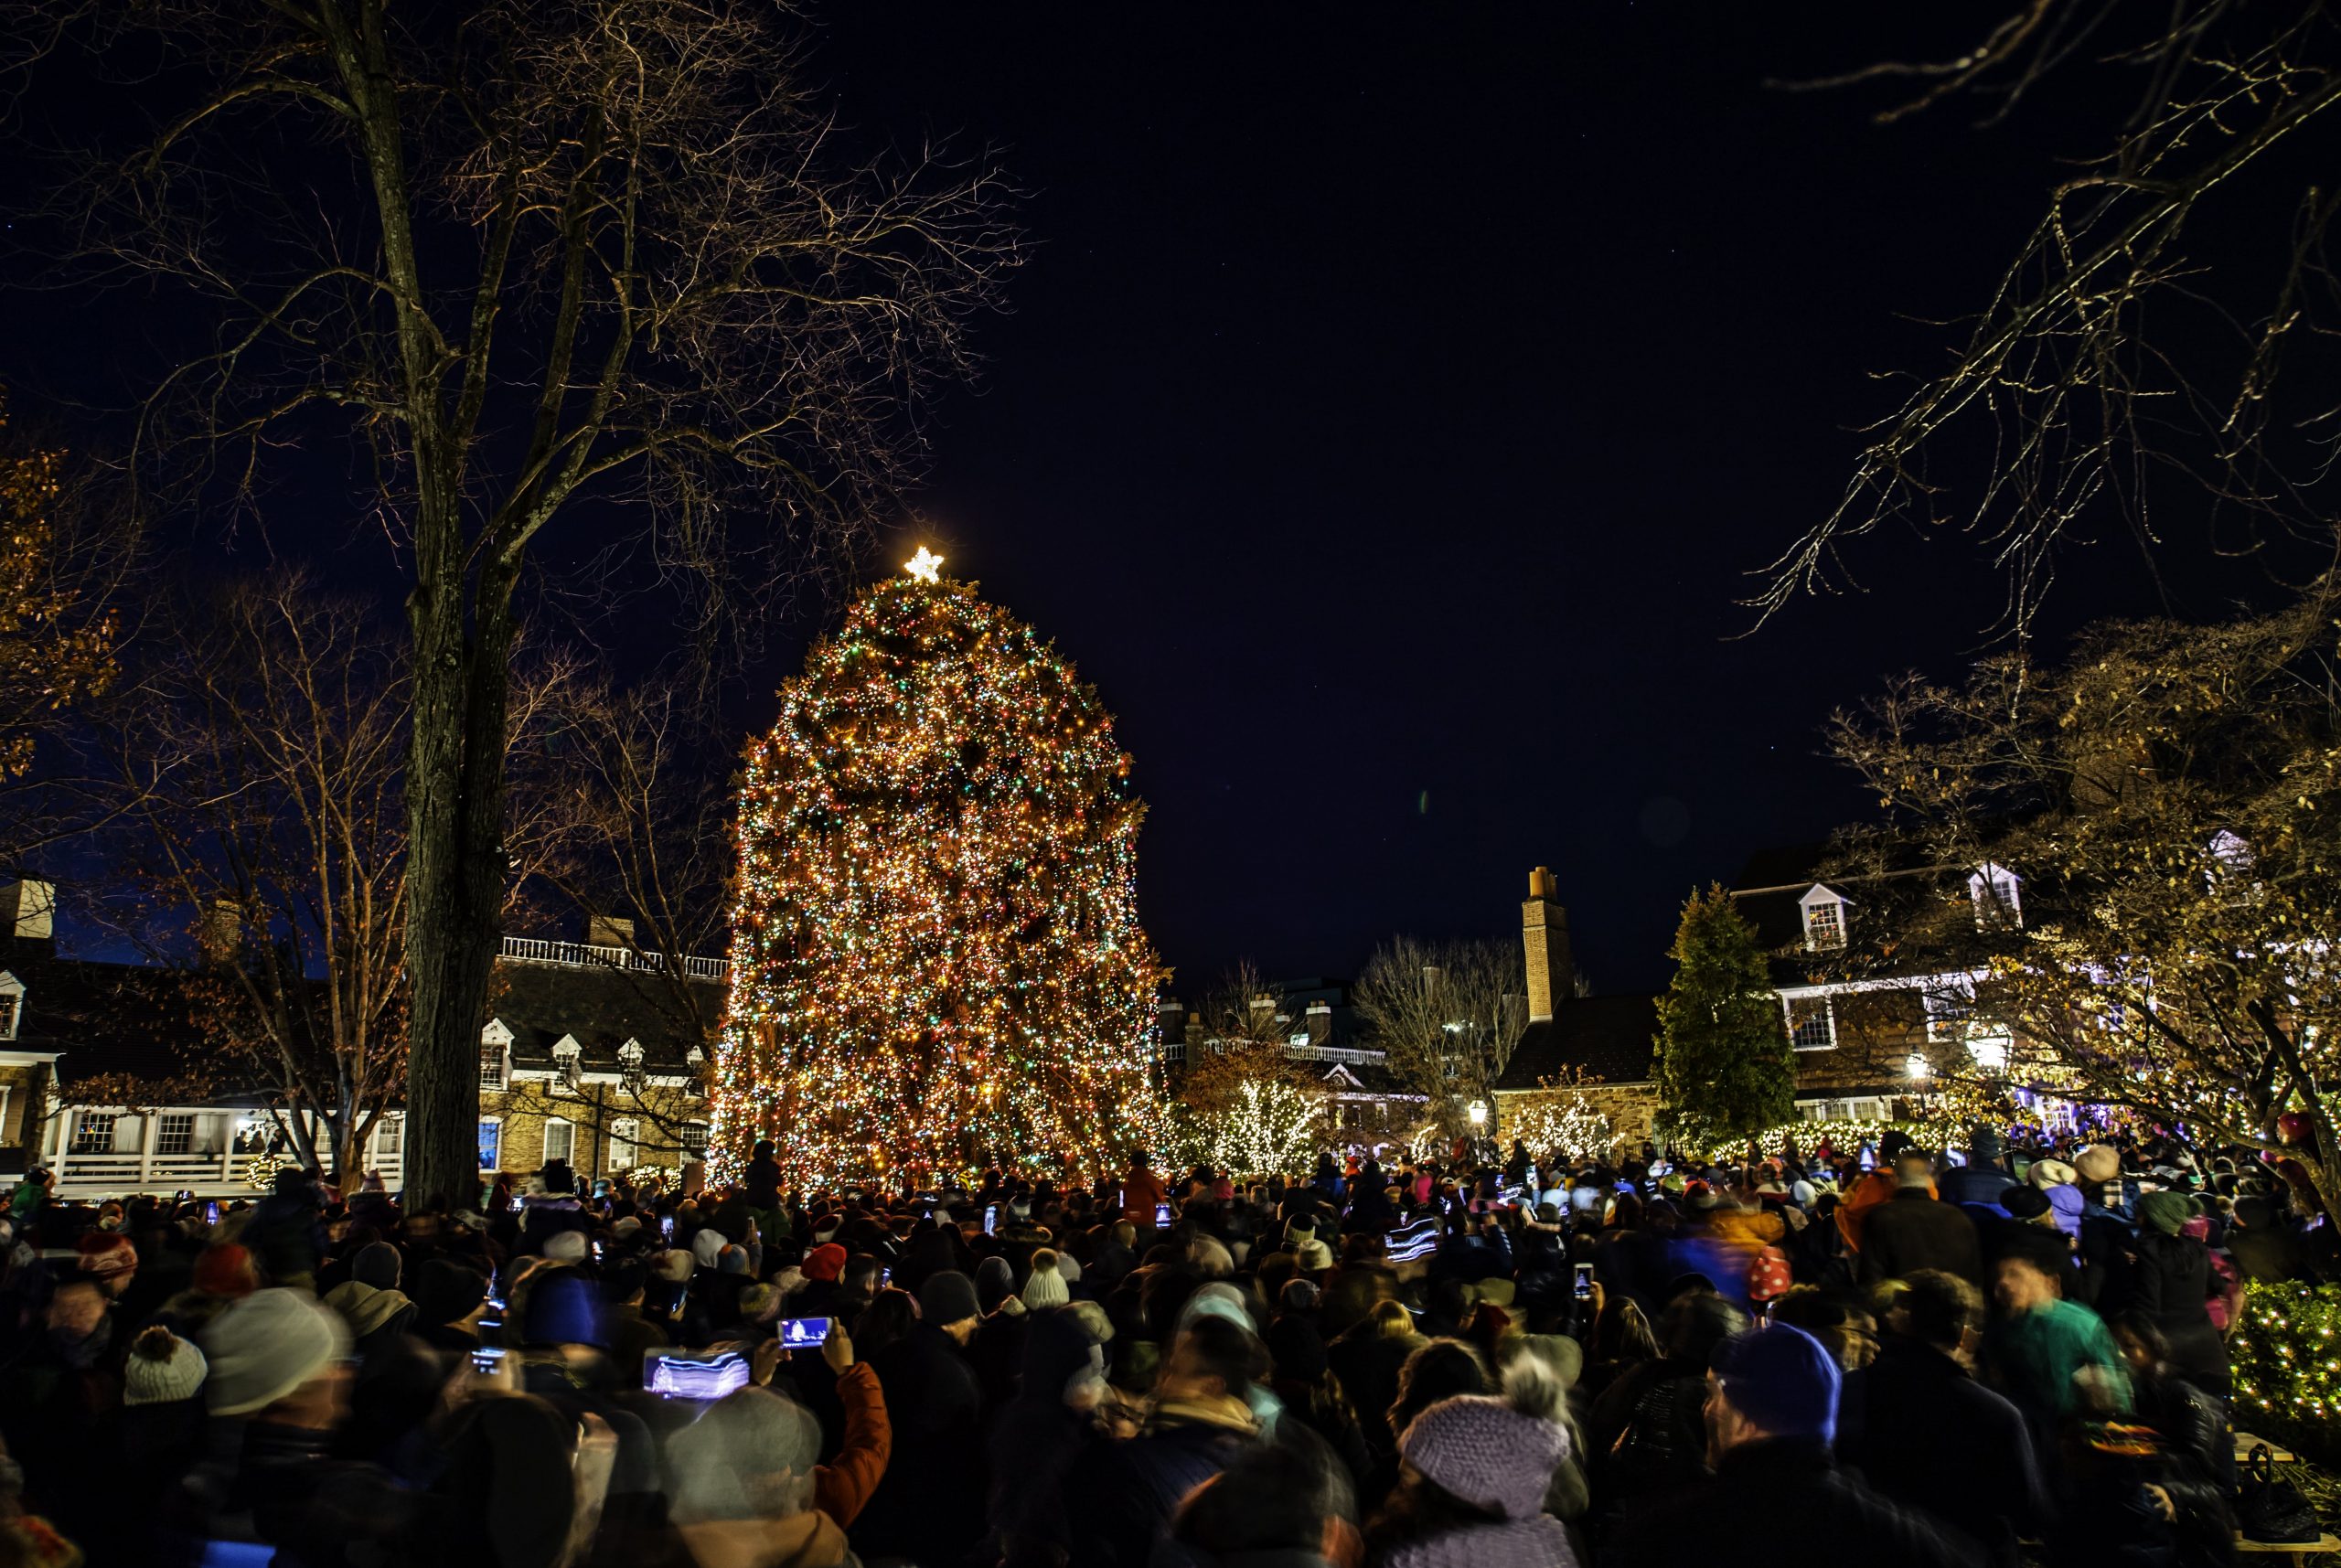 Crowd around large lit Christmas tree